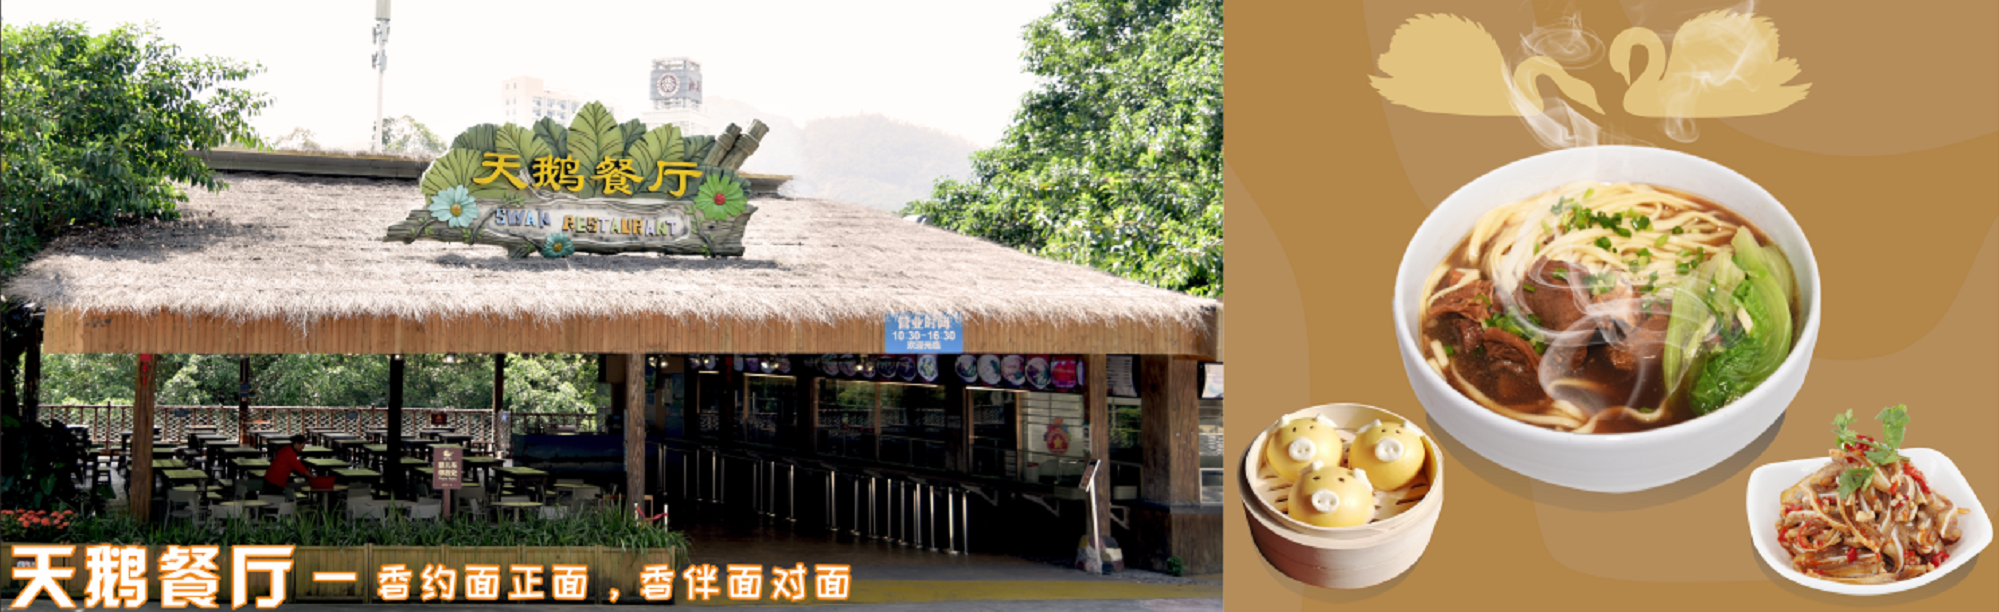 深圳野生動物園餐廳